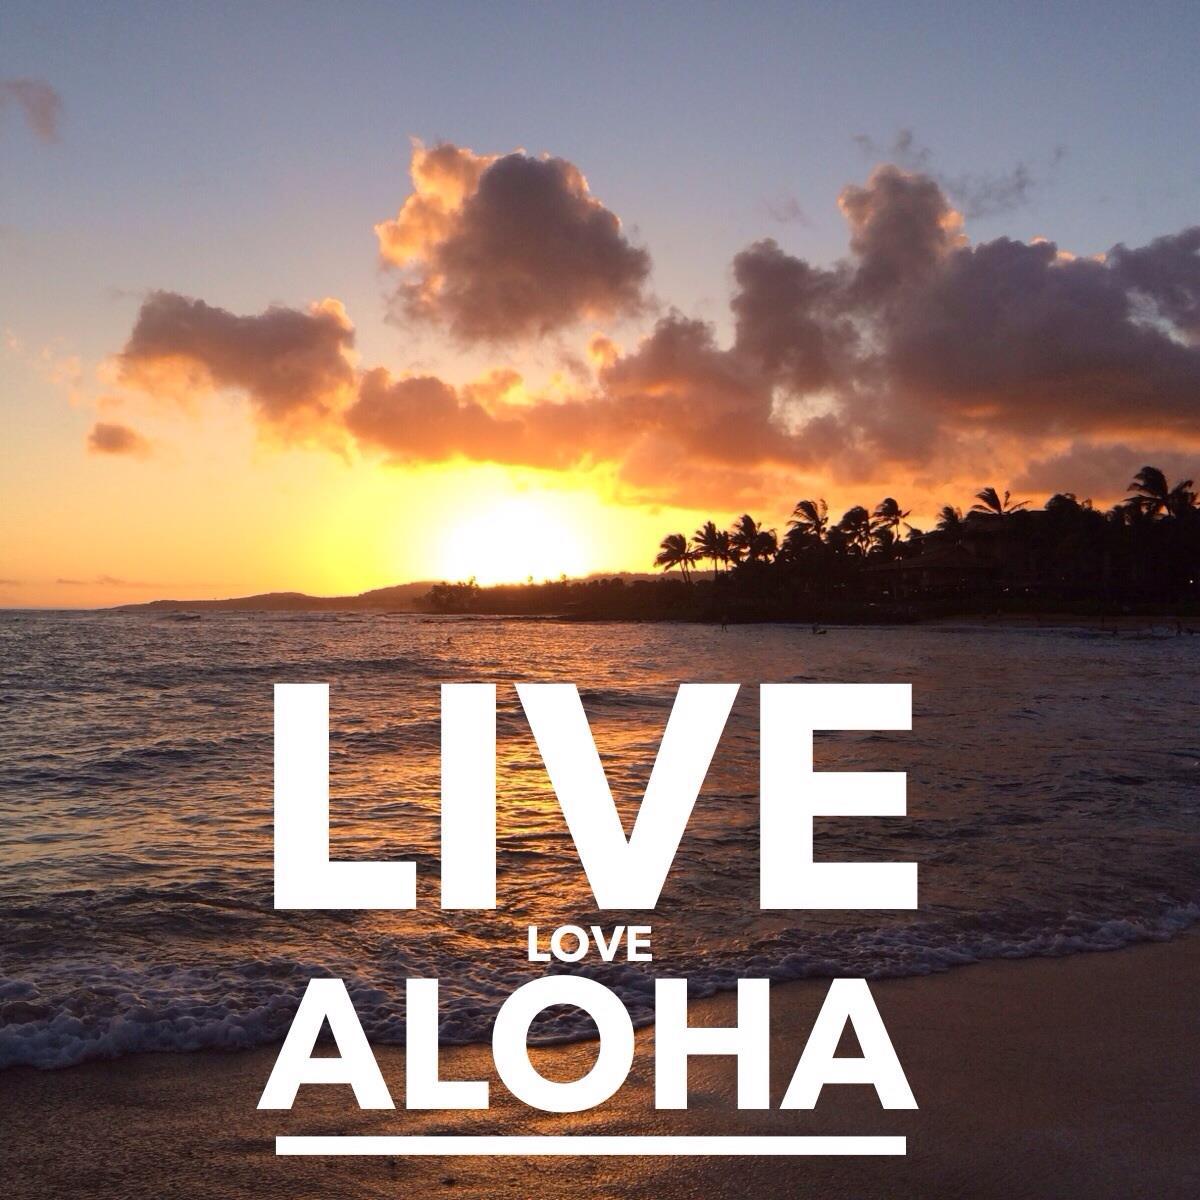 Hawaii vacation quotes